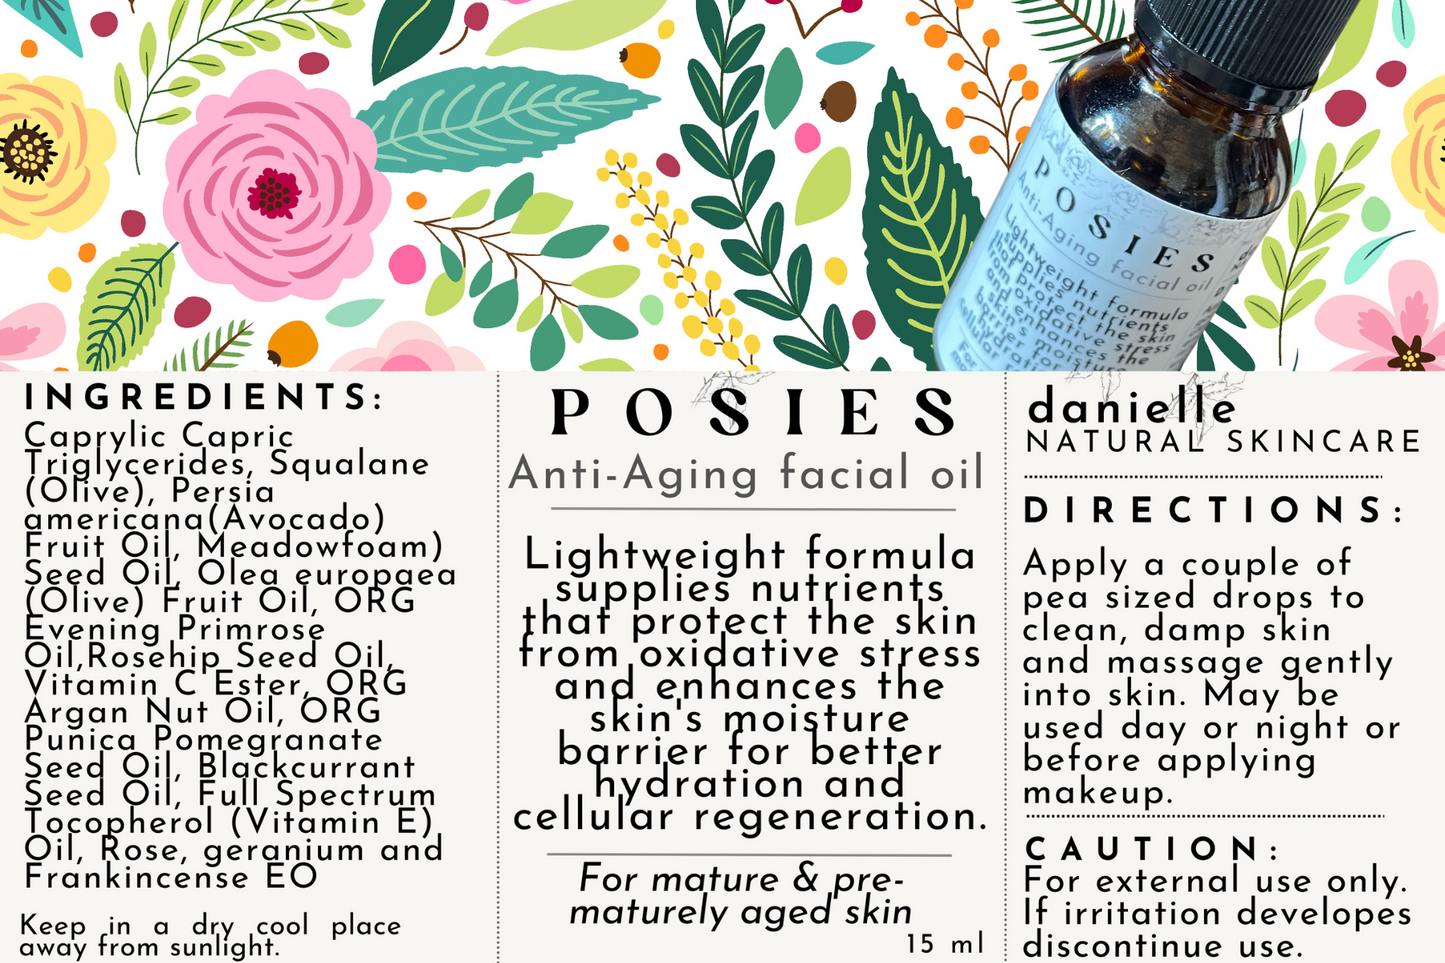 Posies Anti-Aging Facial Oil - Danielle Natural Skincare